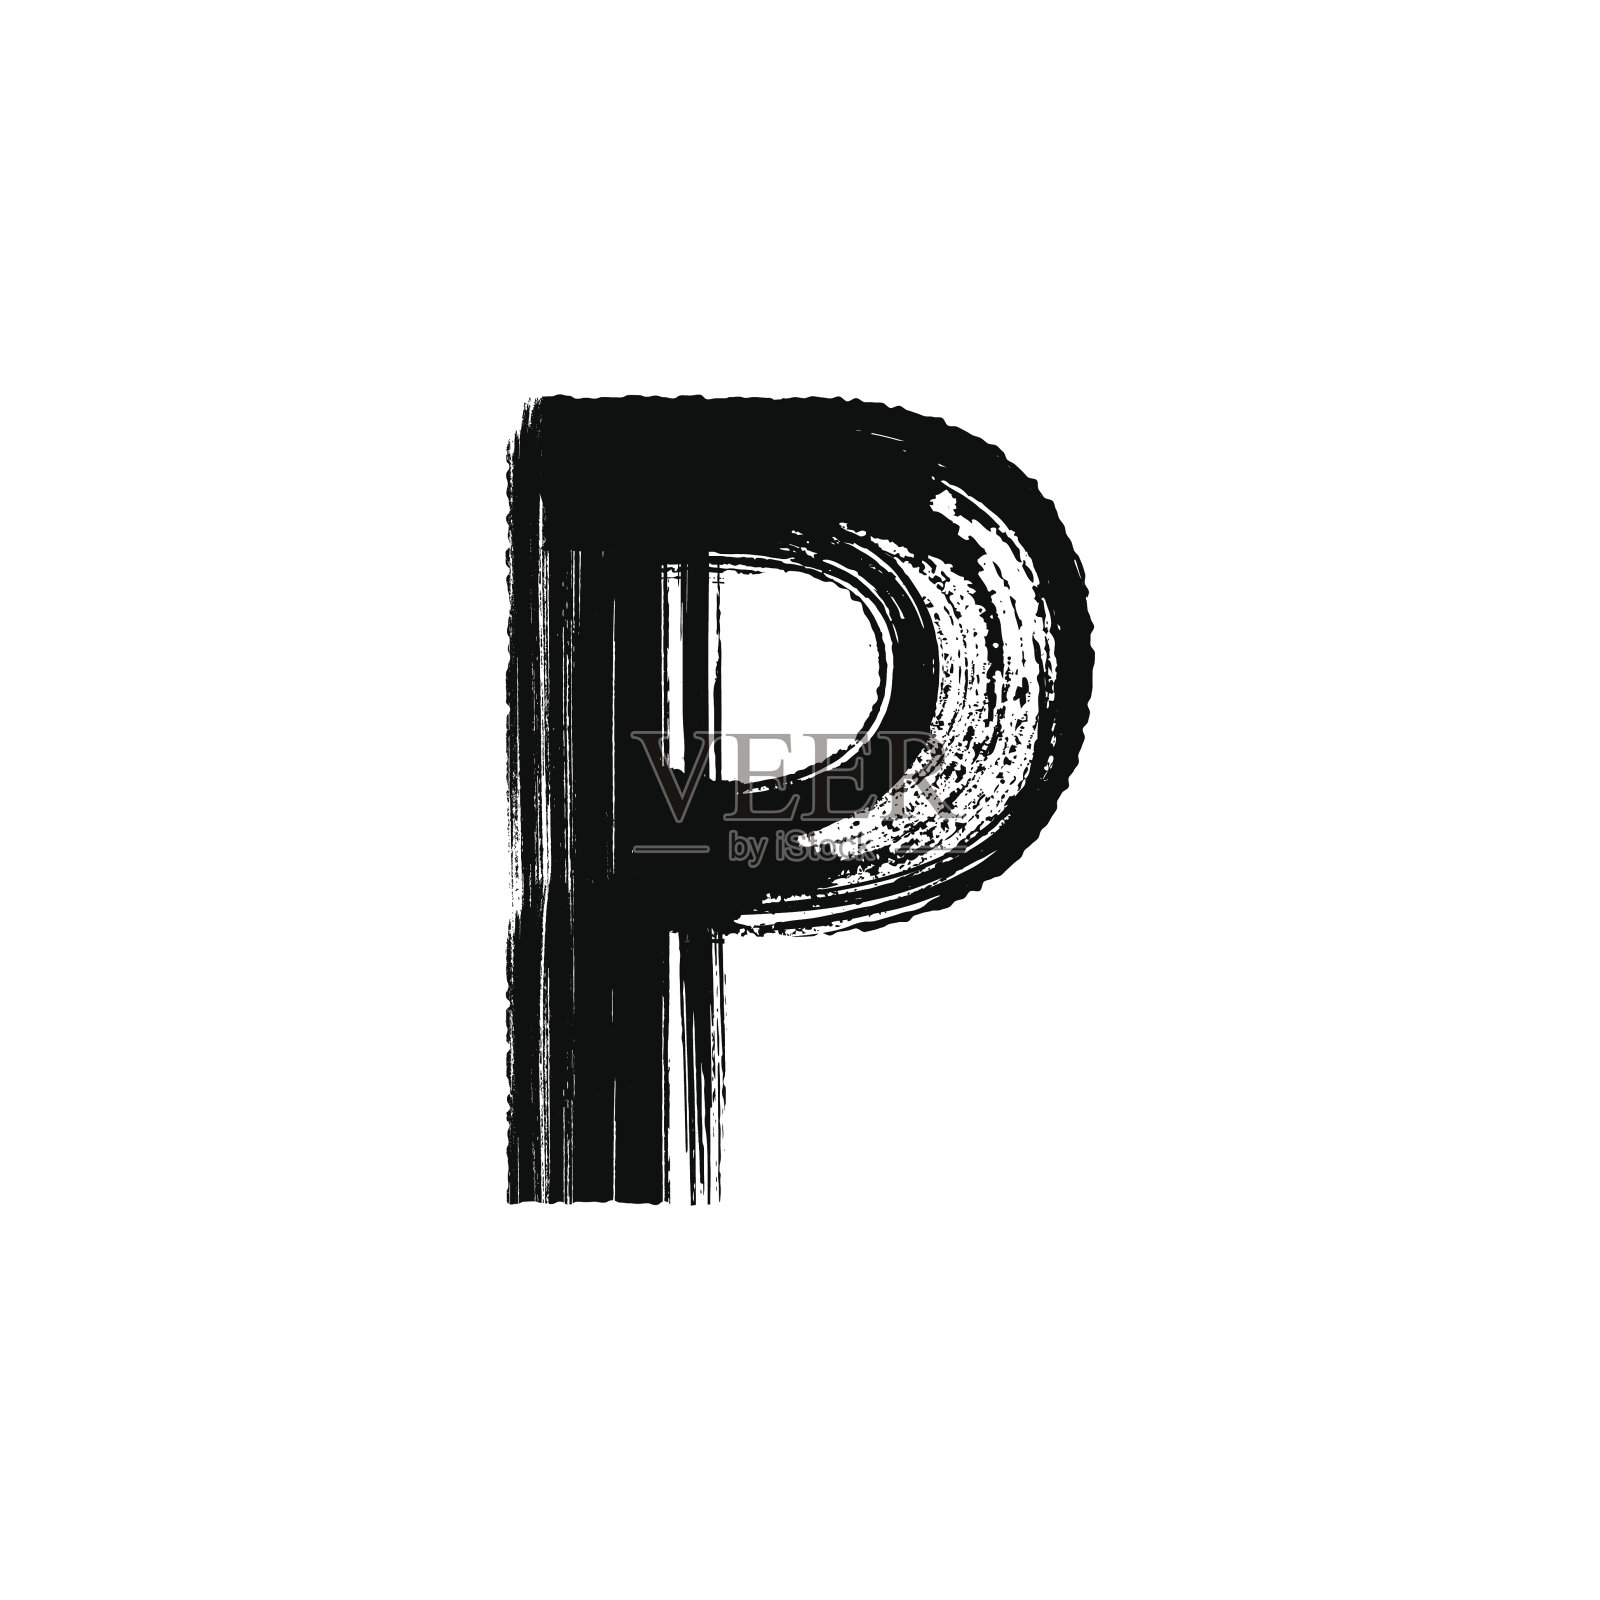 字母P用干画笔手绘设计元素图片